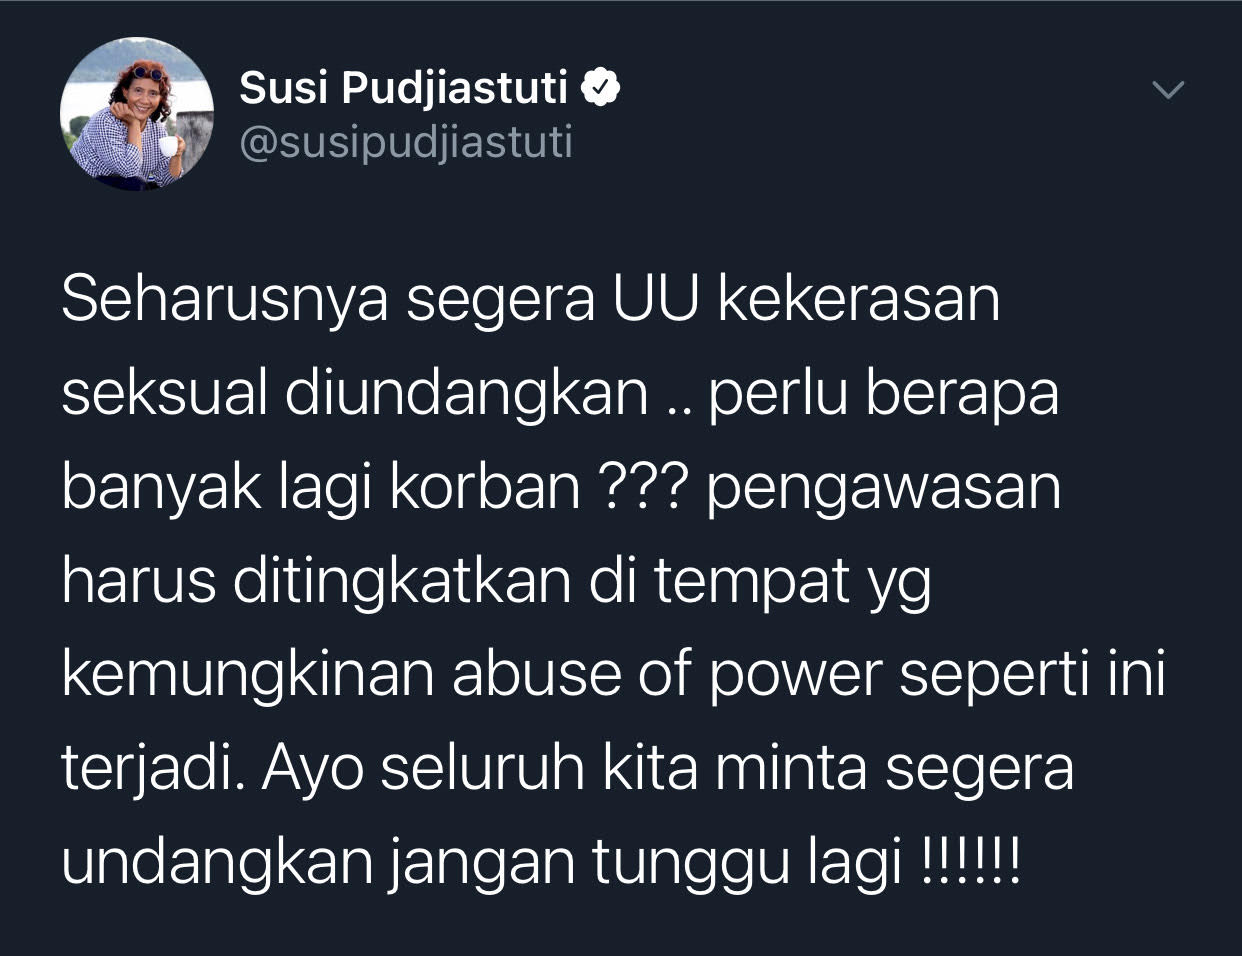 Soroti maraknya kasus pelecehan seksual di Indonesia, Susi Pudjiastuti mendesak segera disahkannya RUU Penghapusan Kekerasan Seksual.